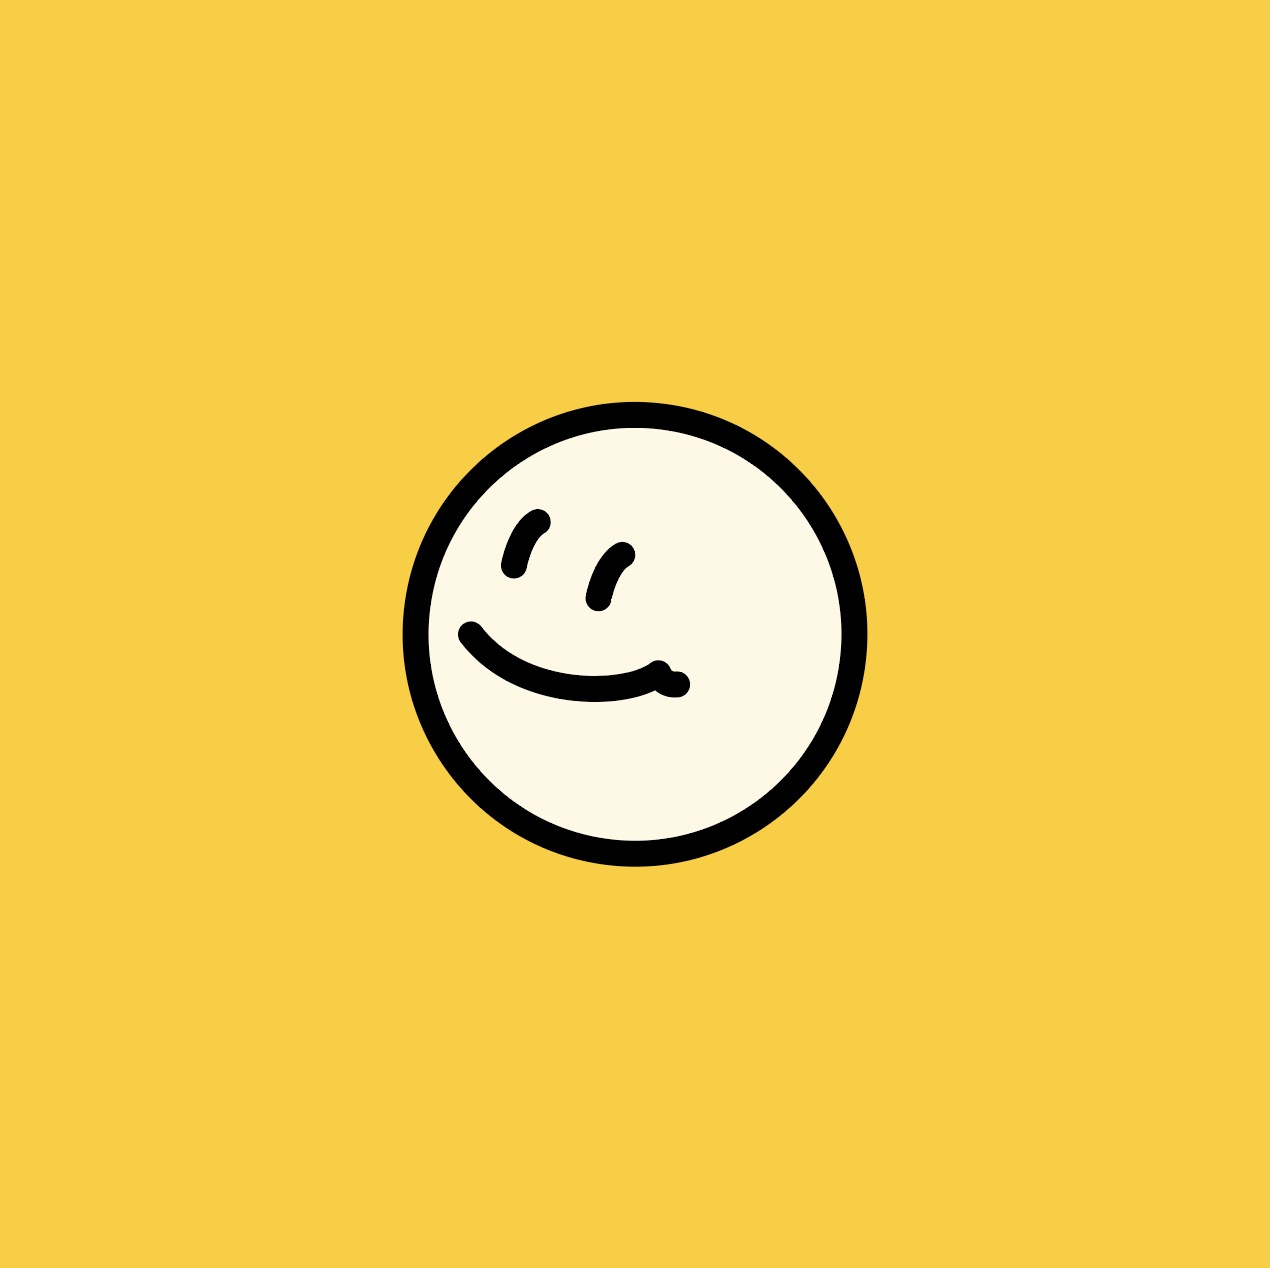 스마일 얼굴 아이콘 일러스트 Ai 다운로드 Download Smiley Face Icon - Urbanbrush